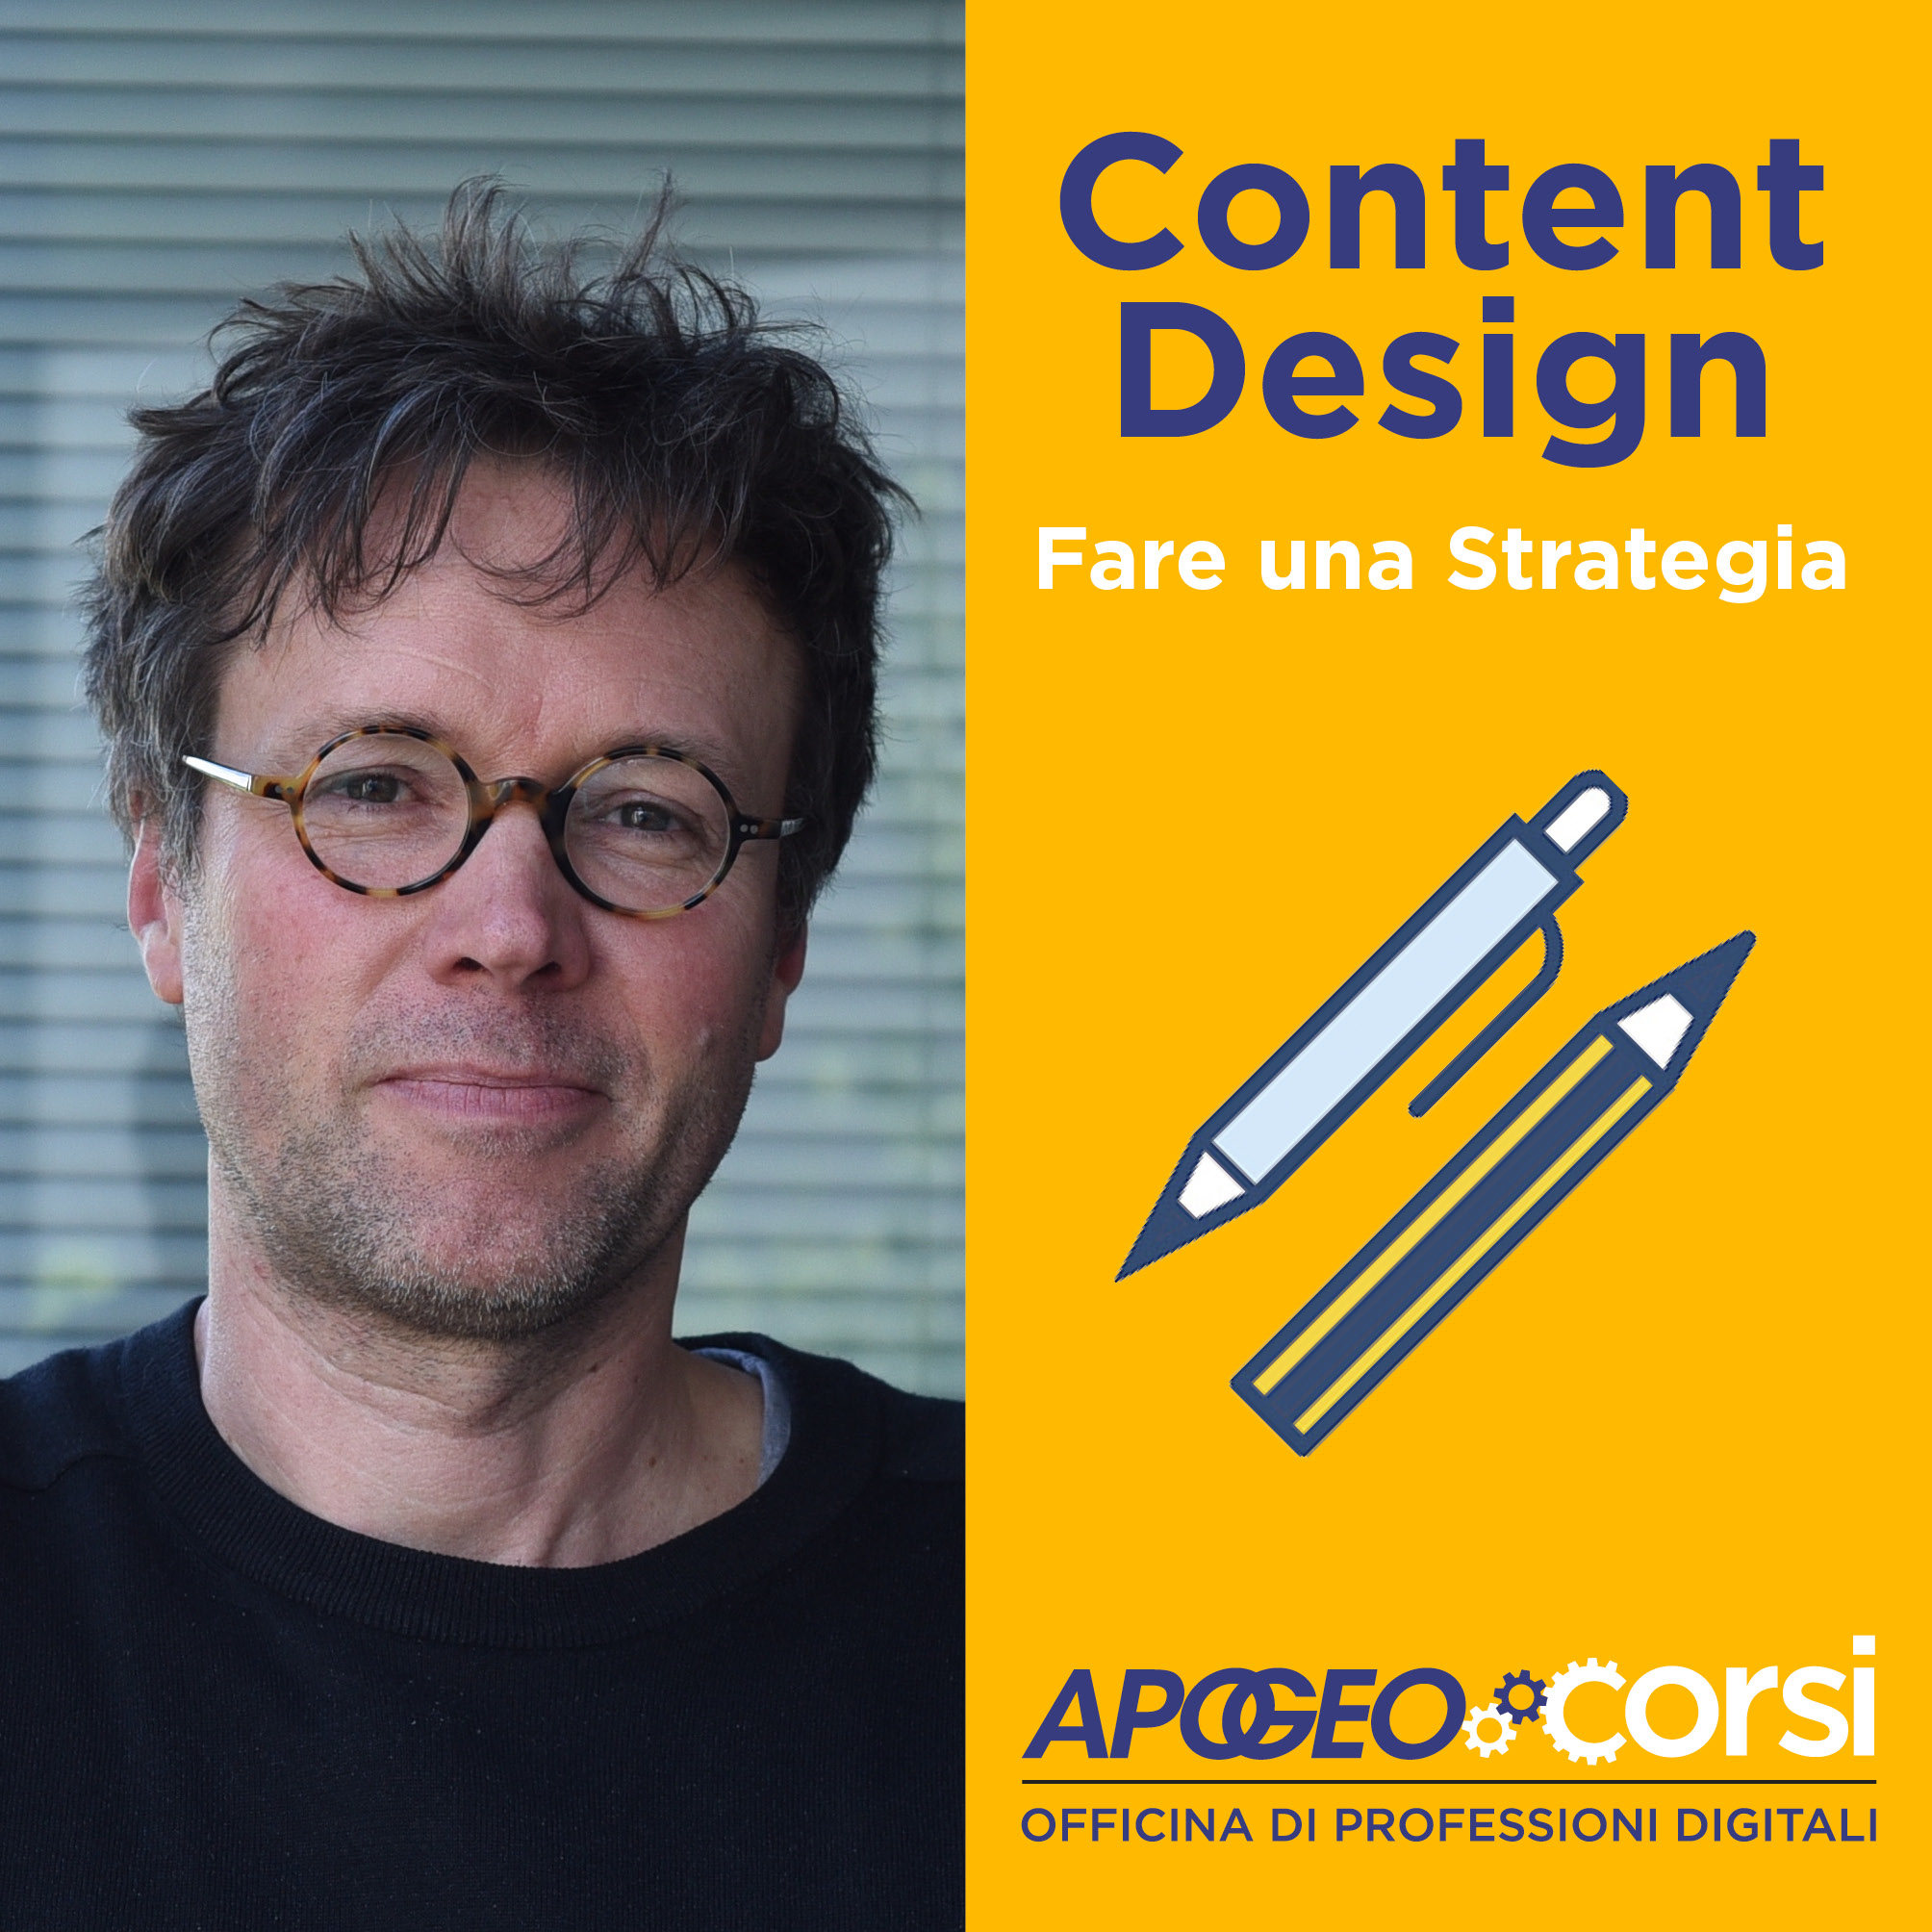 Content Design - Fare una-Strategia, con Nicola Bonora